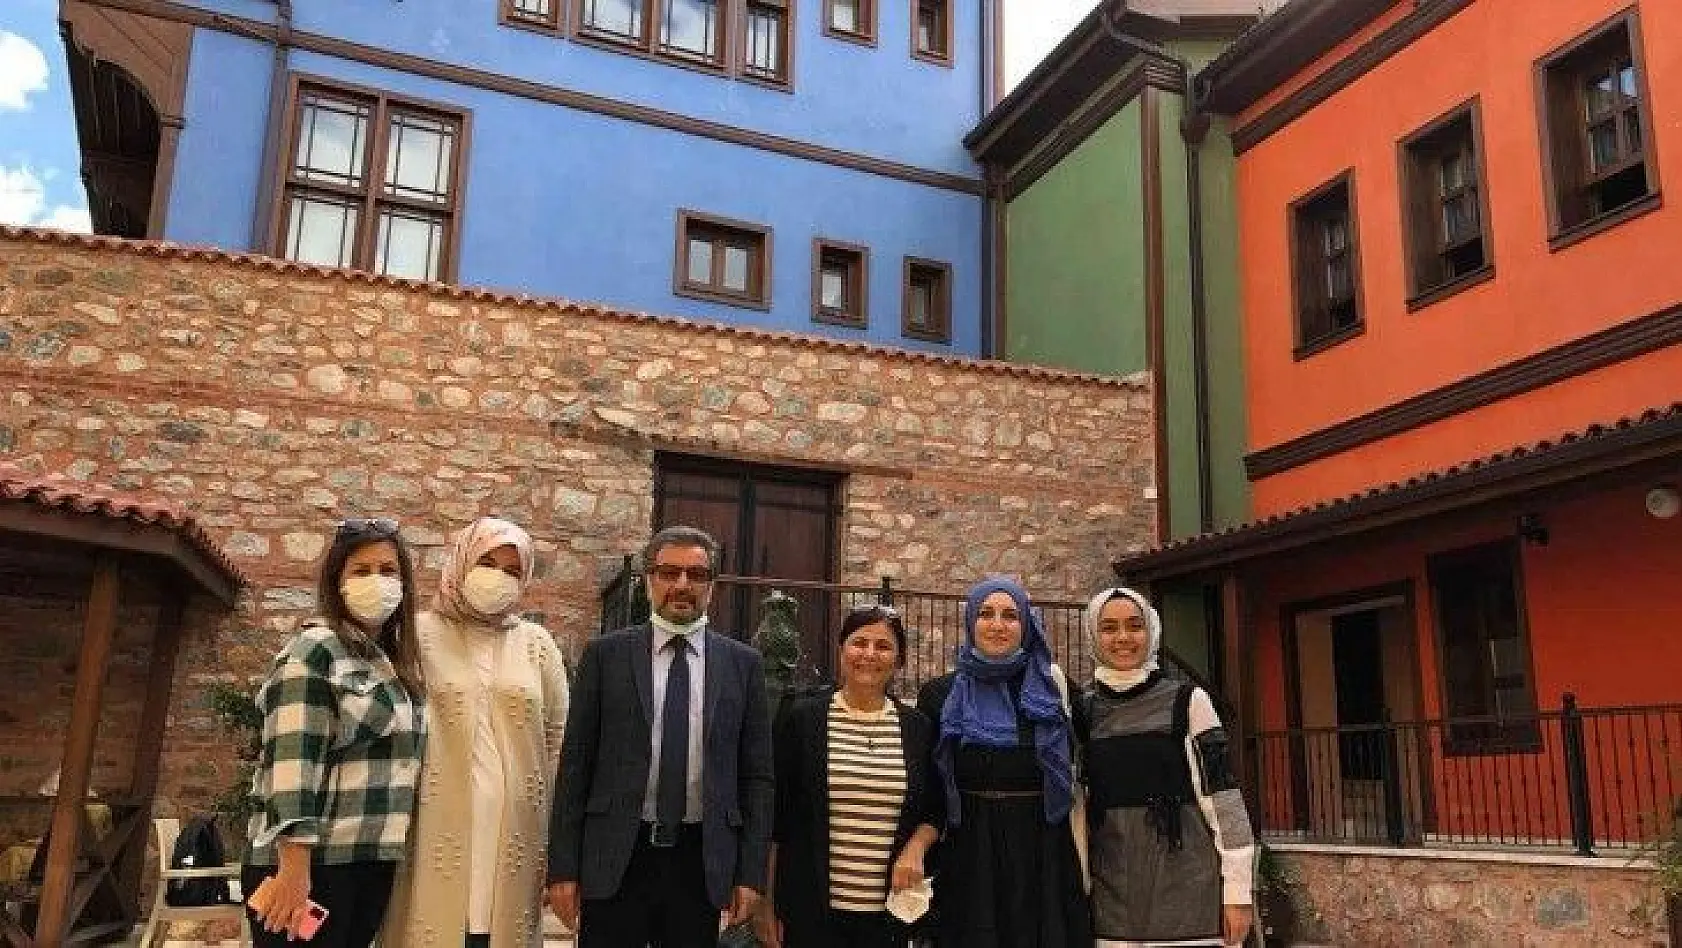 Şehrengizlerin gözüyle Bursa'ya bakış